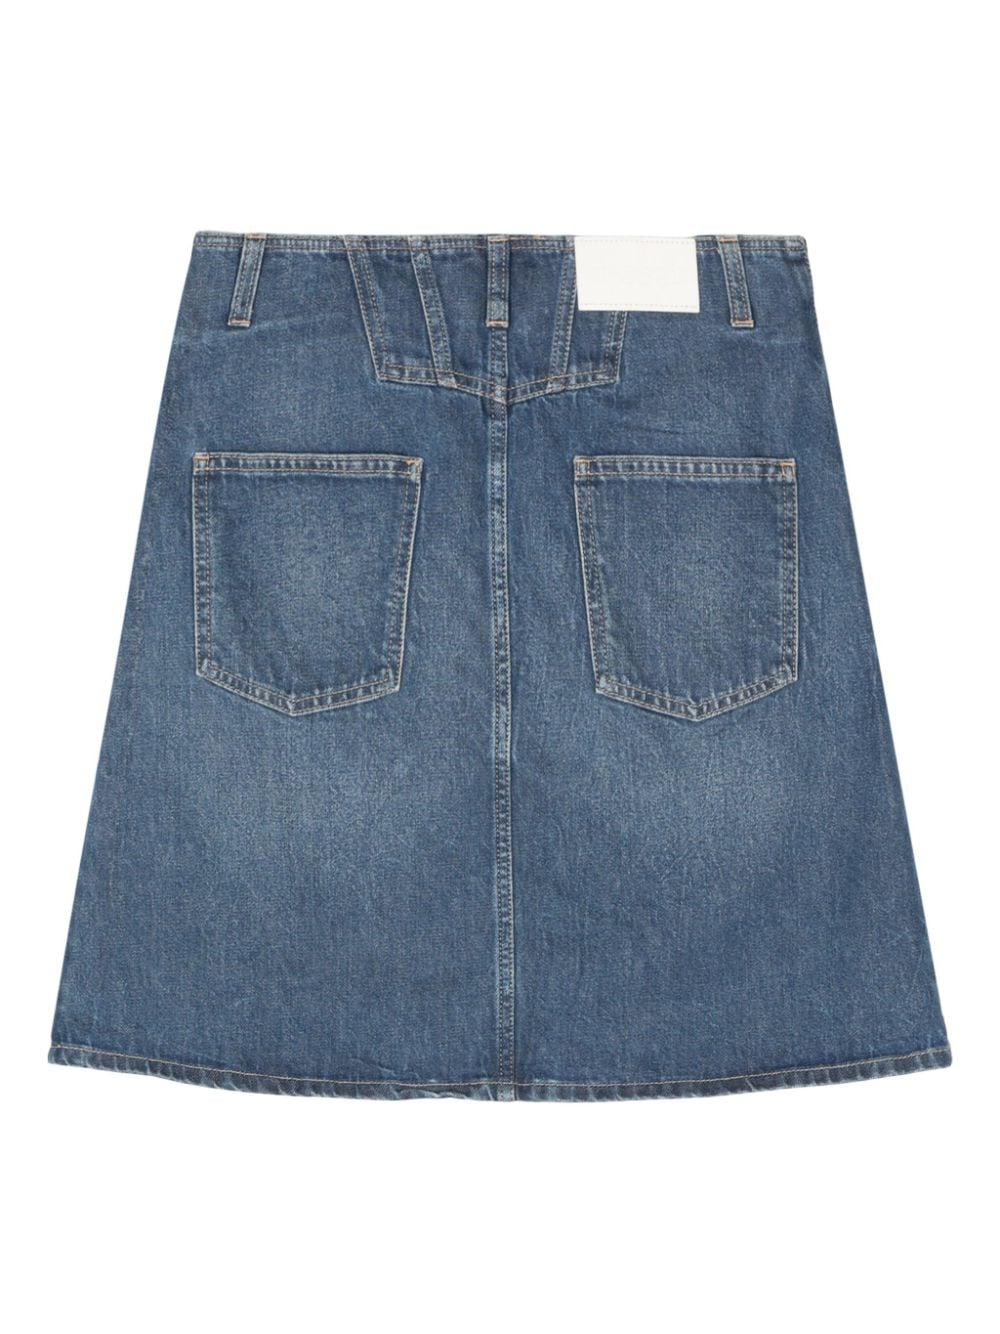 CLOSED CLOSED- Denim Mini Skirt